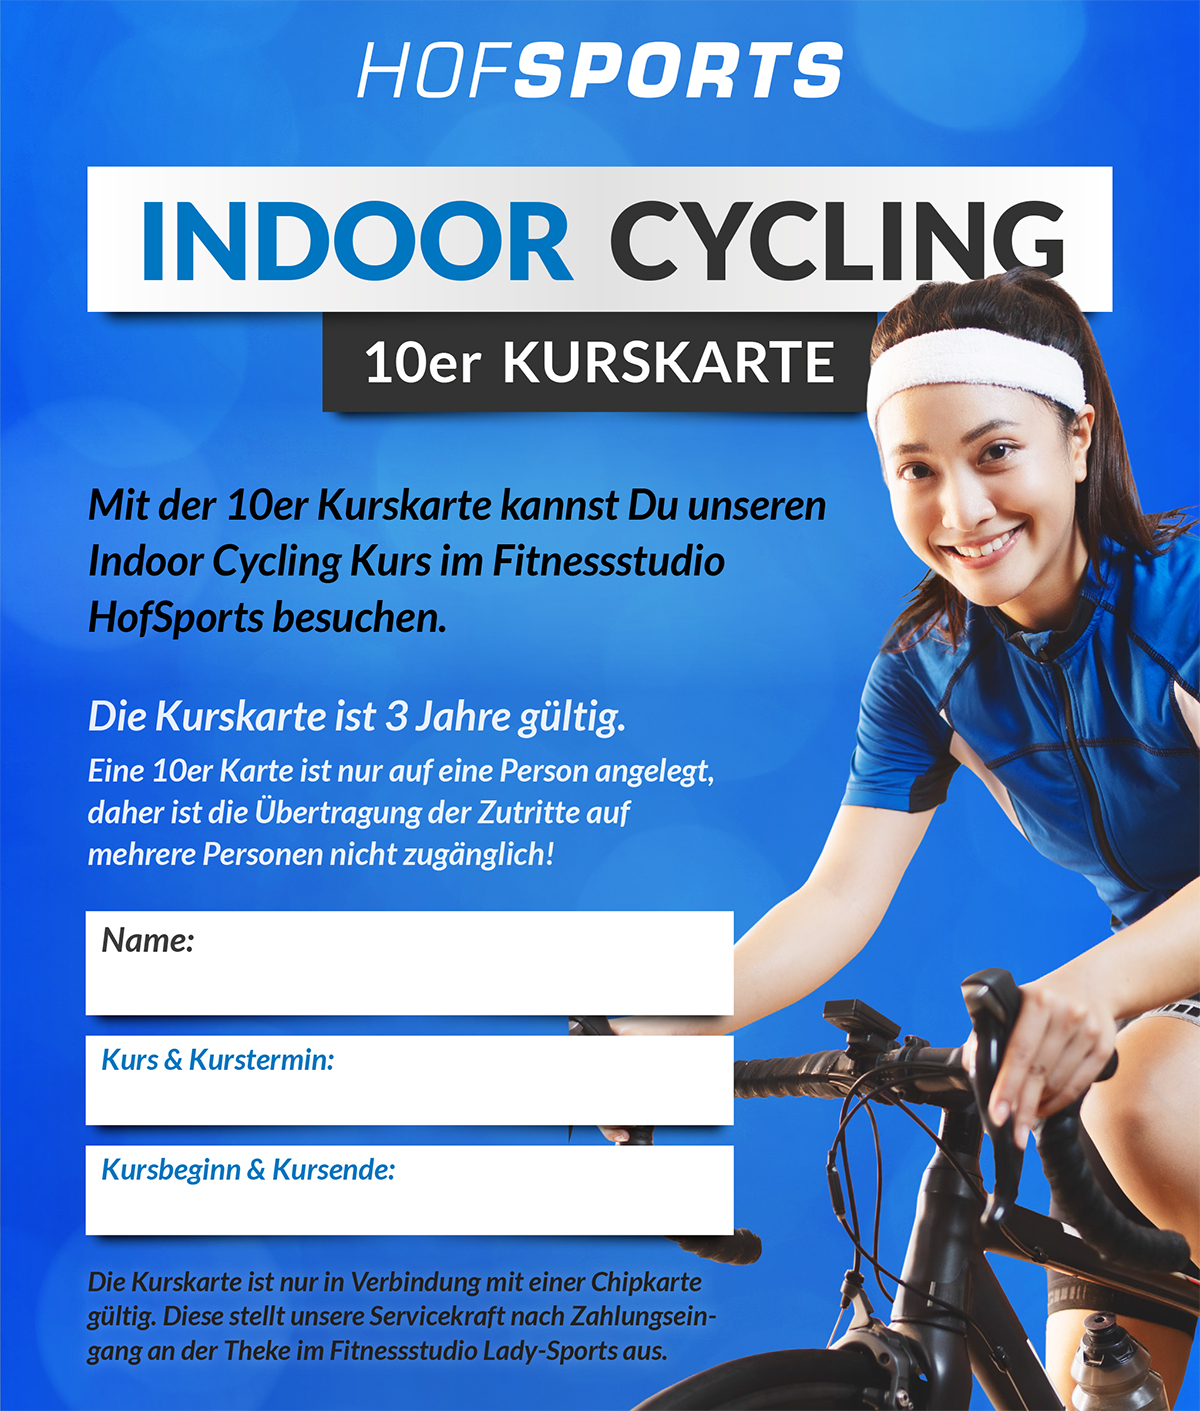 HofSports-10er-Kurskarte-Indoor-Cycling-Kurs